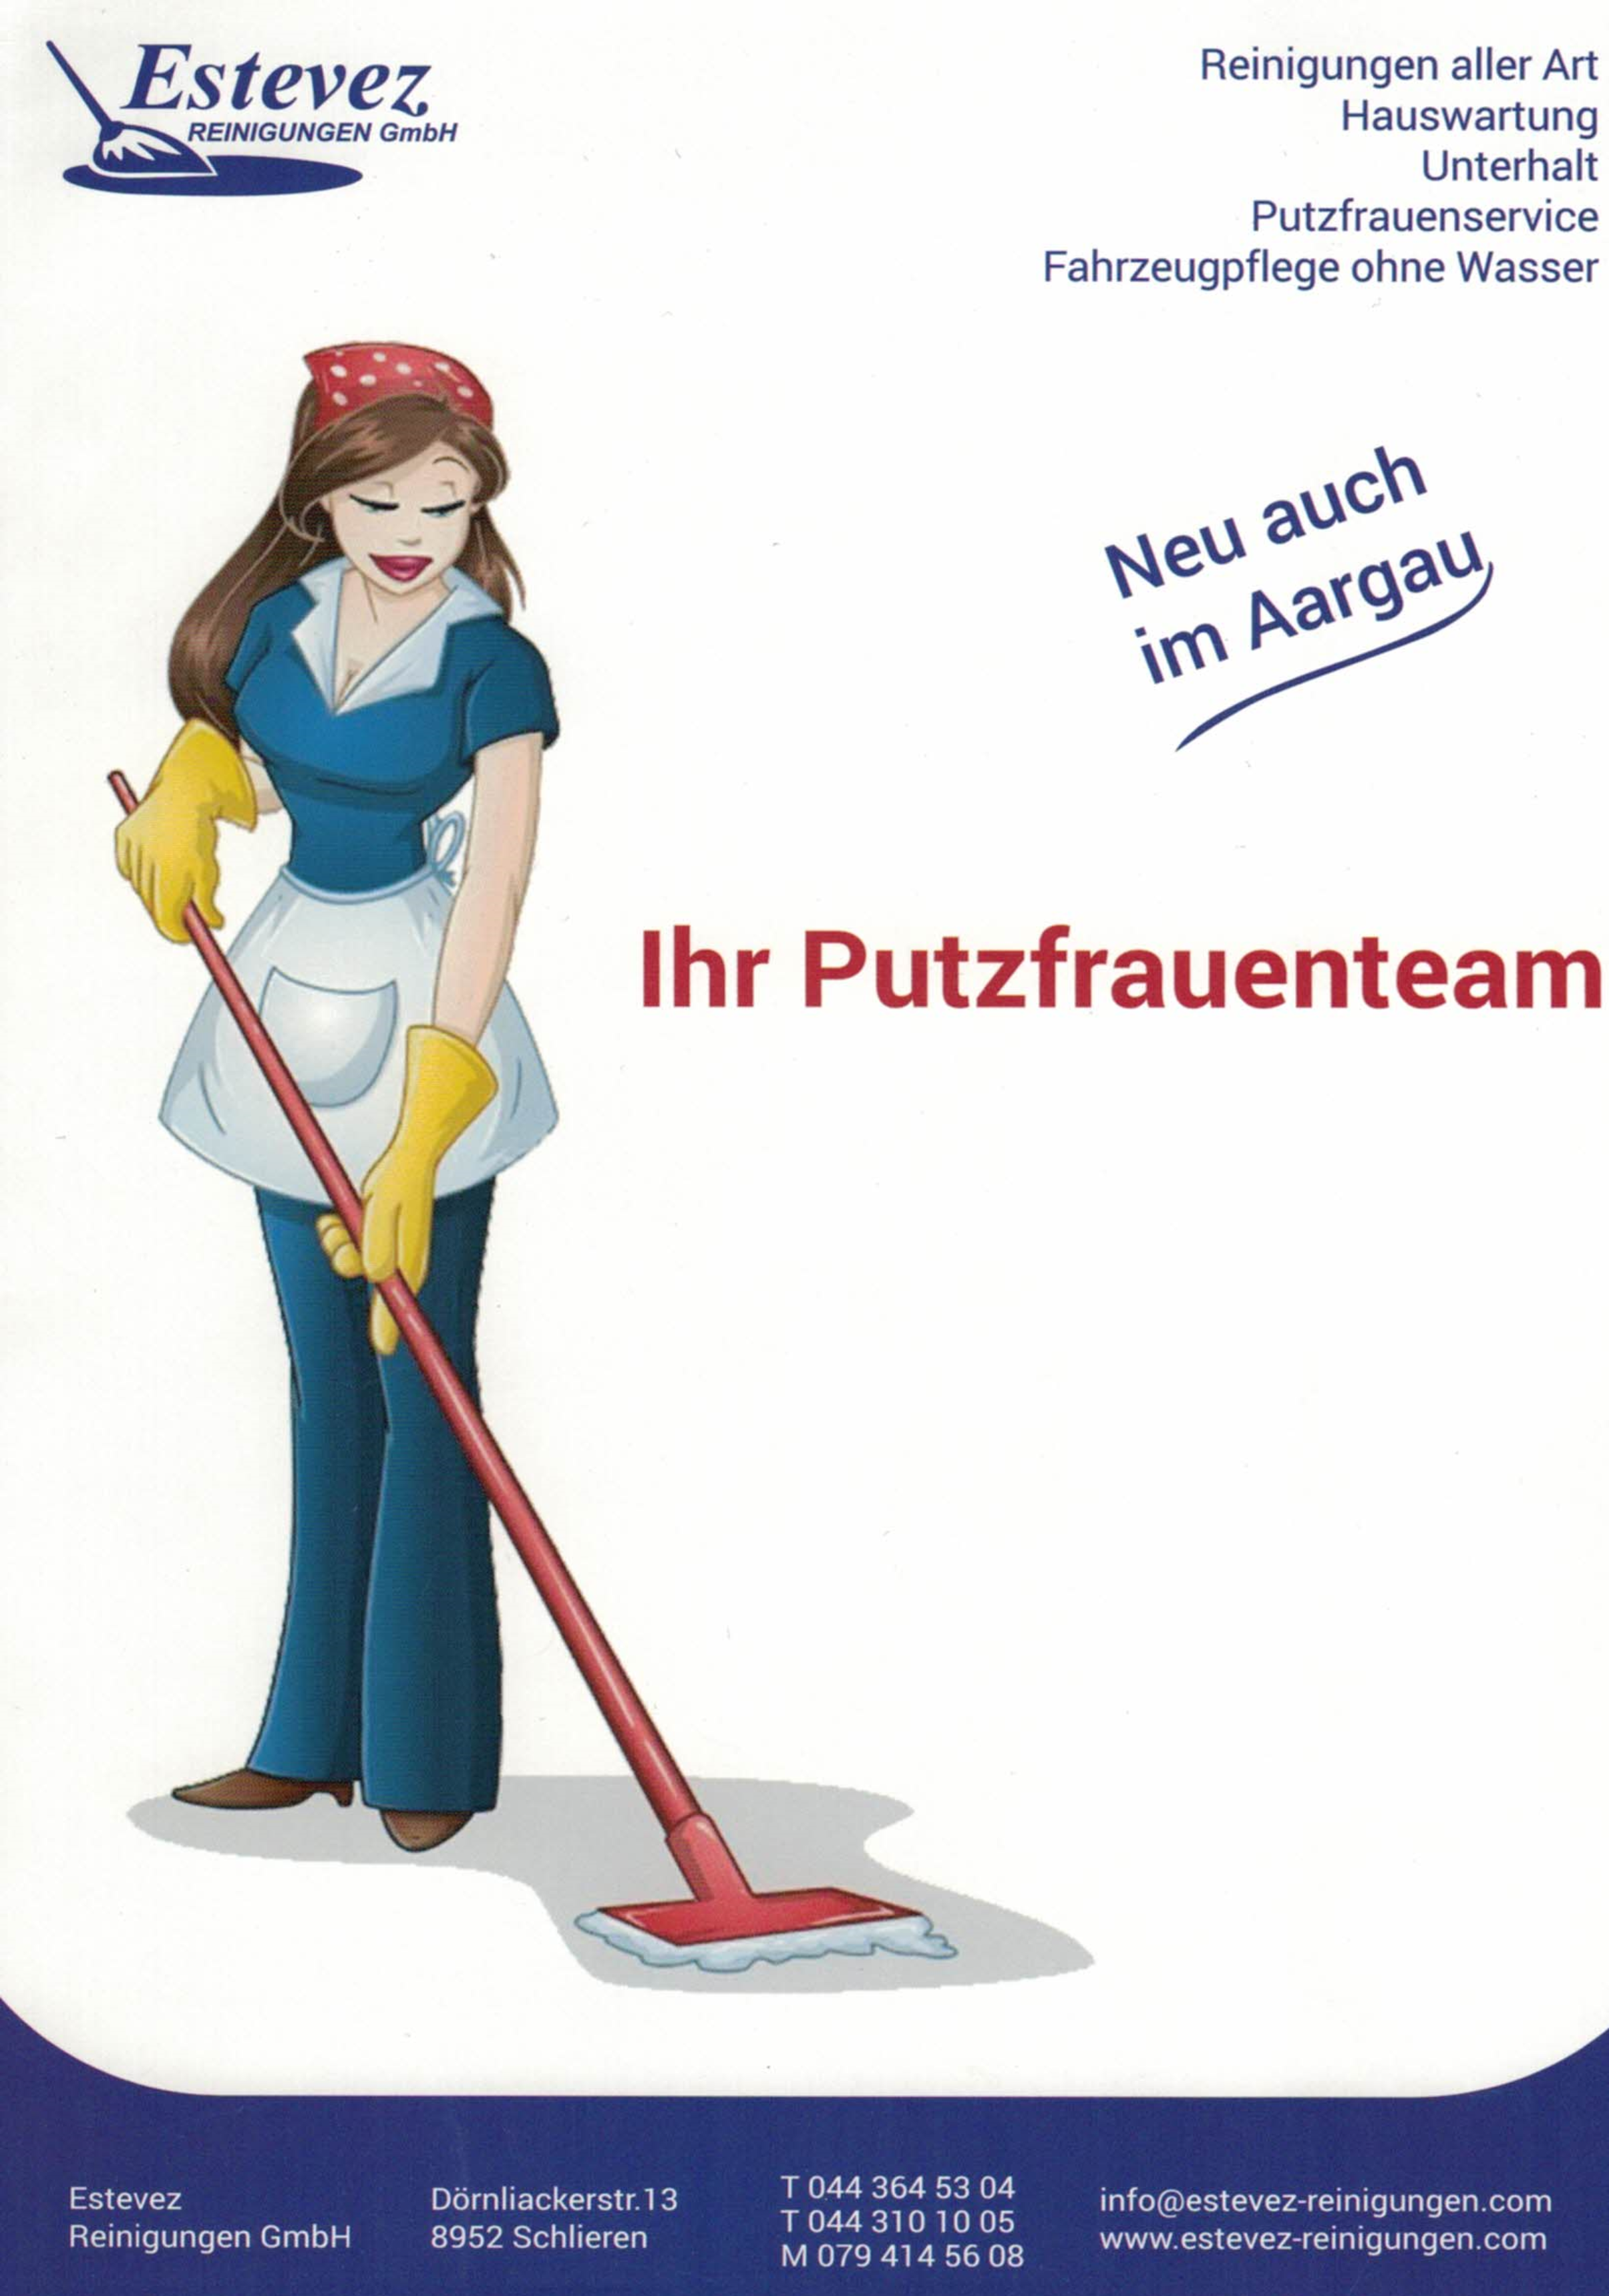 Estevez Reinigungen GmbH zu löschen